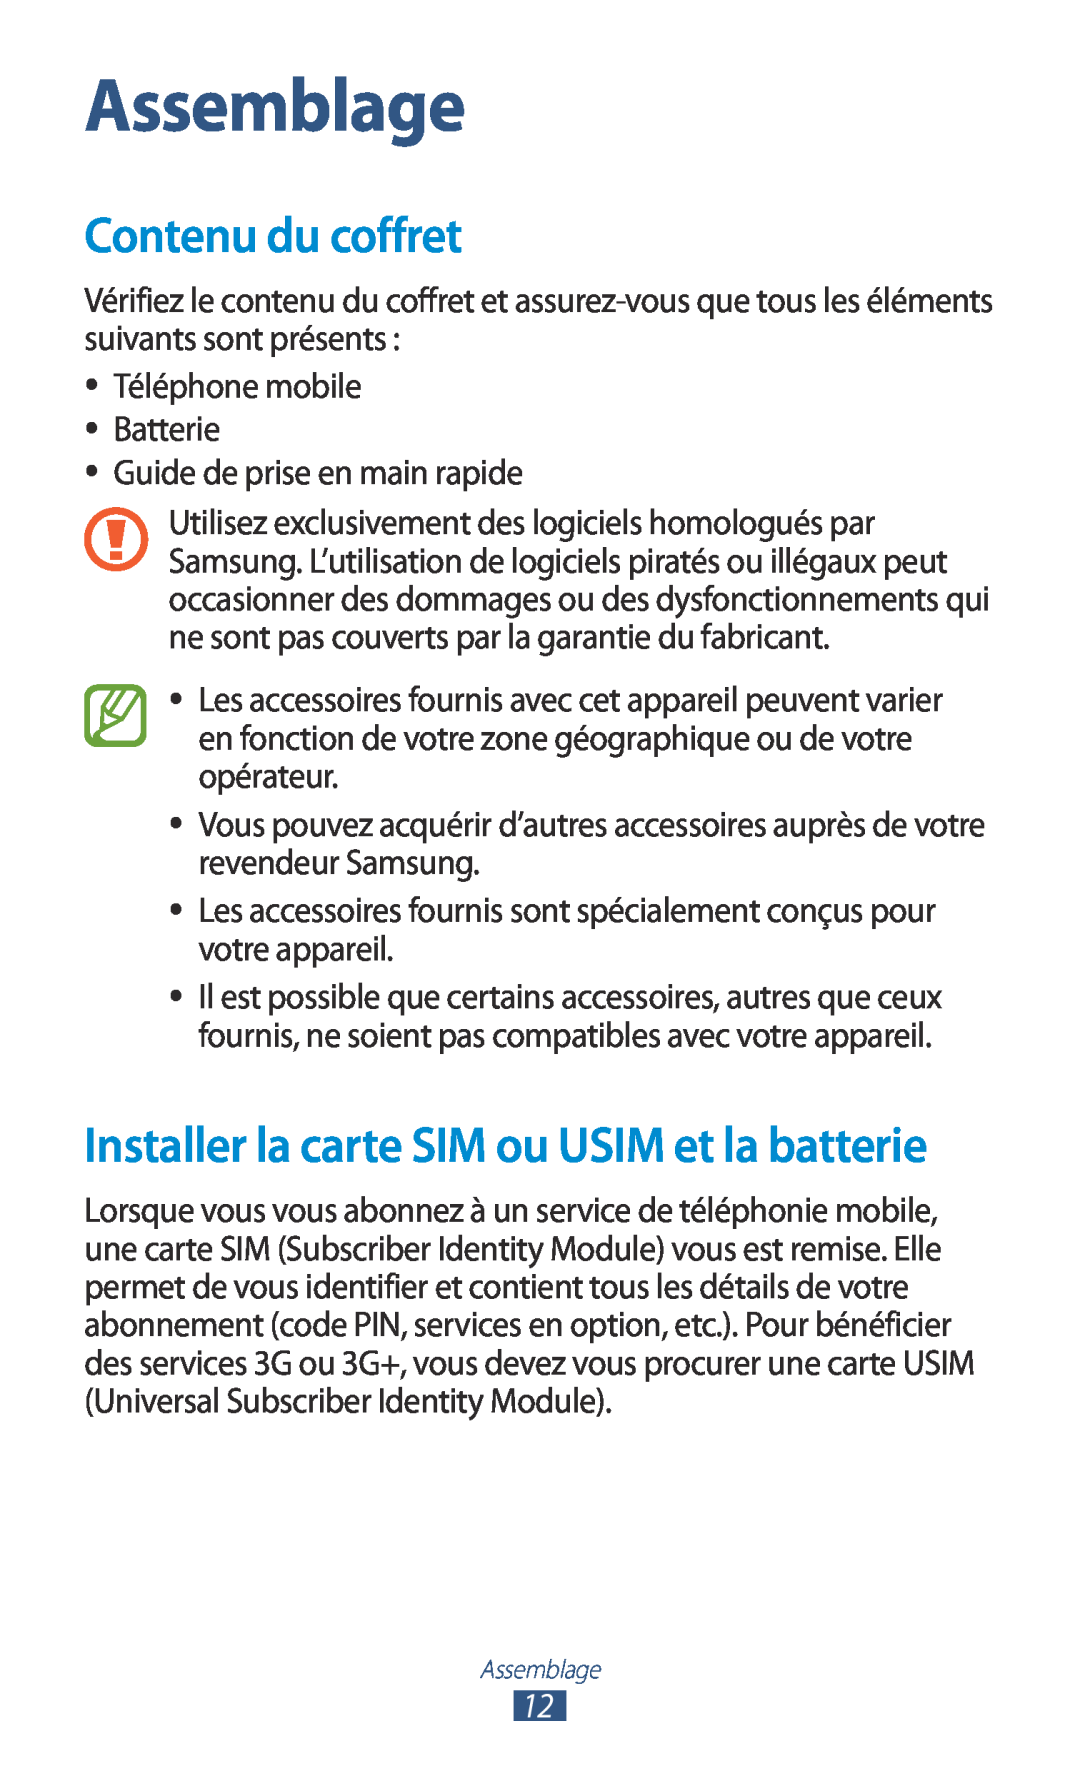 Samsung GT-N7000ZIAFTM, GT-N7000ZIABOG manual Assemblage, Contenu du coffret, Installer la carte SIM ou USIM et la batterie 